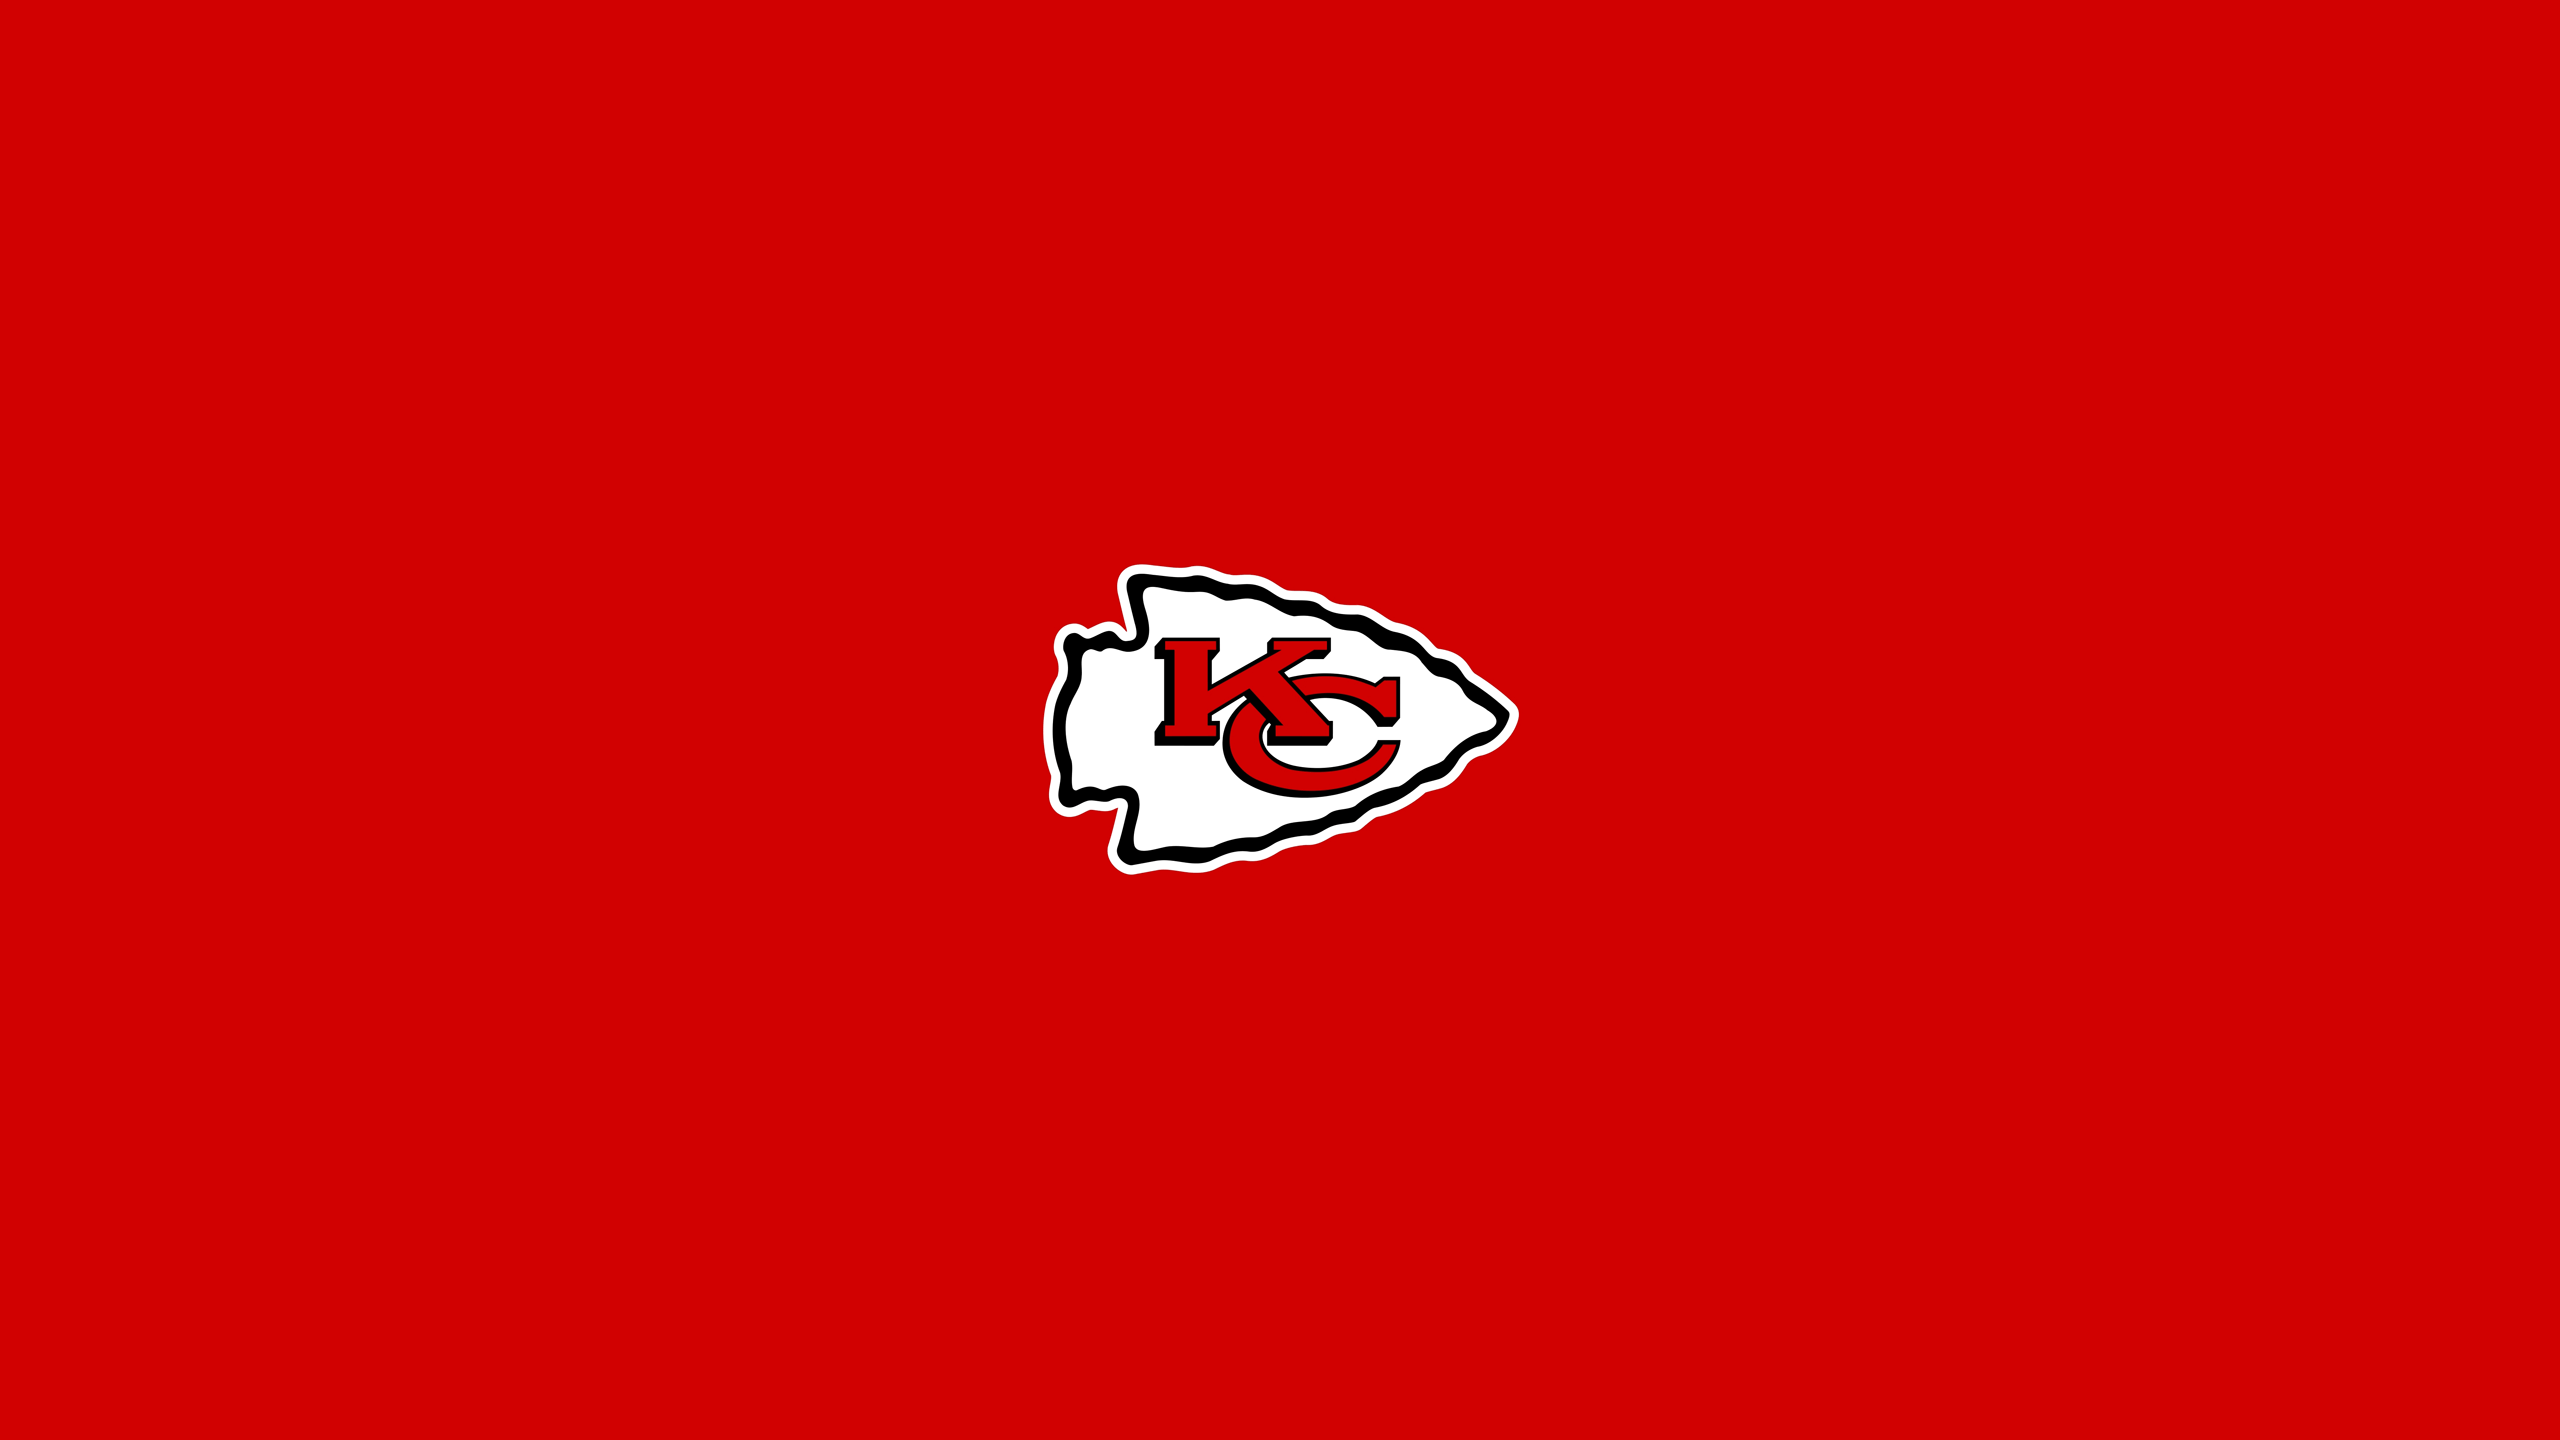 KC Chiefs Logo - Kansas City Chiefs Logo Wallpaper | PixelsTalk.Net